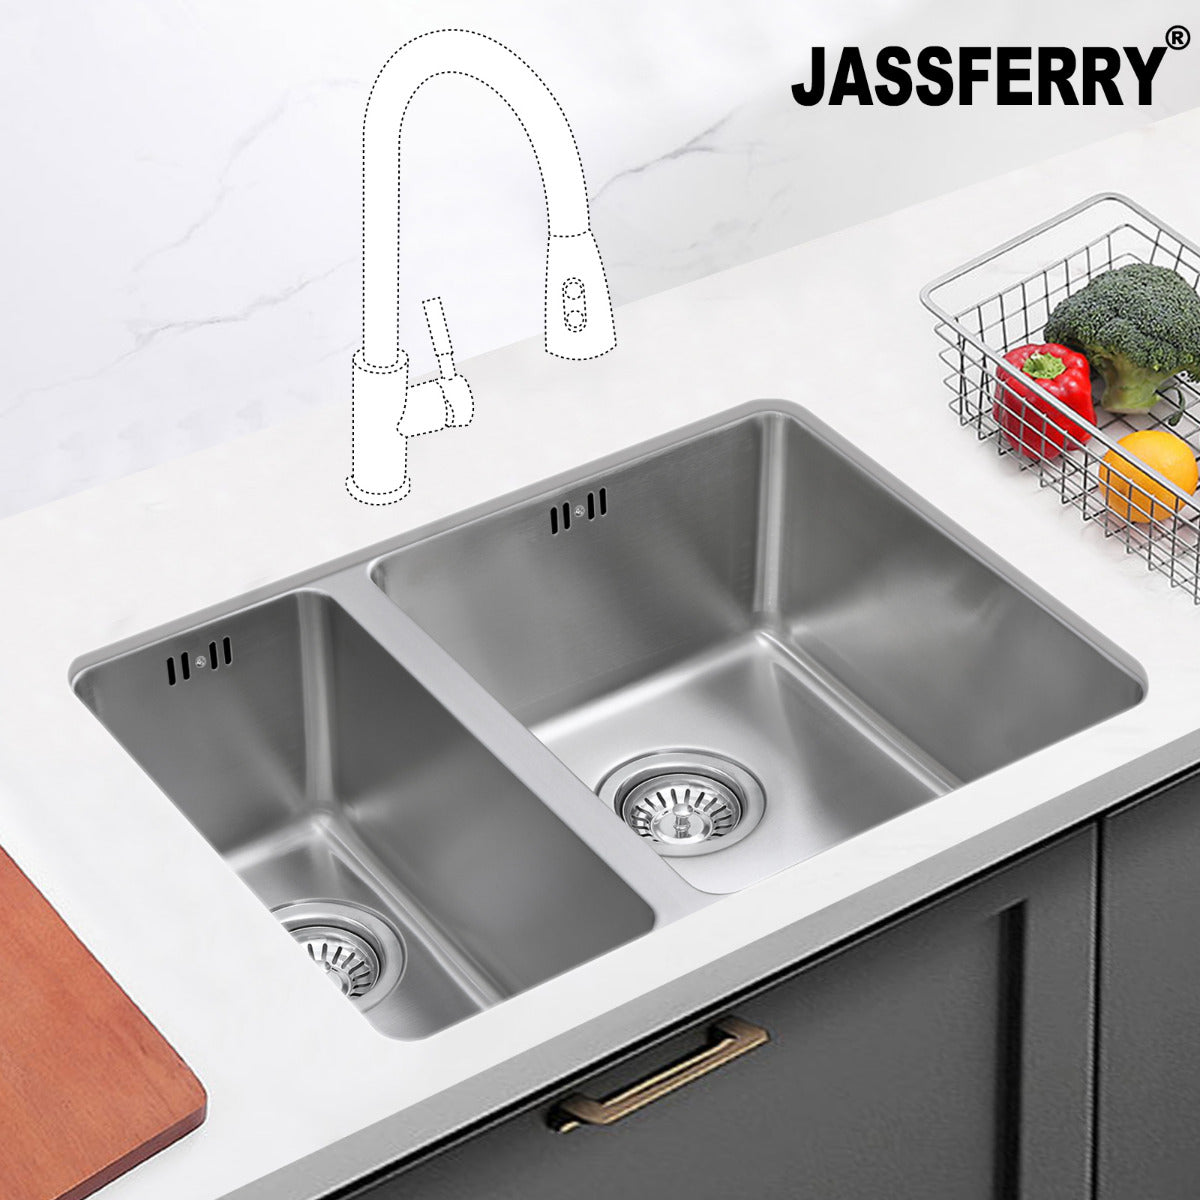 JassferryJASSFERRY Undermount Stainless Steel Kitchen Sink 1.5 Bowl Lefthand Half BowlKitchen Sinks